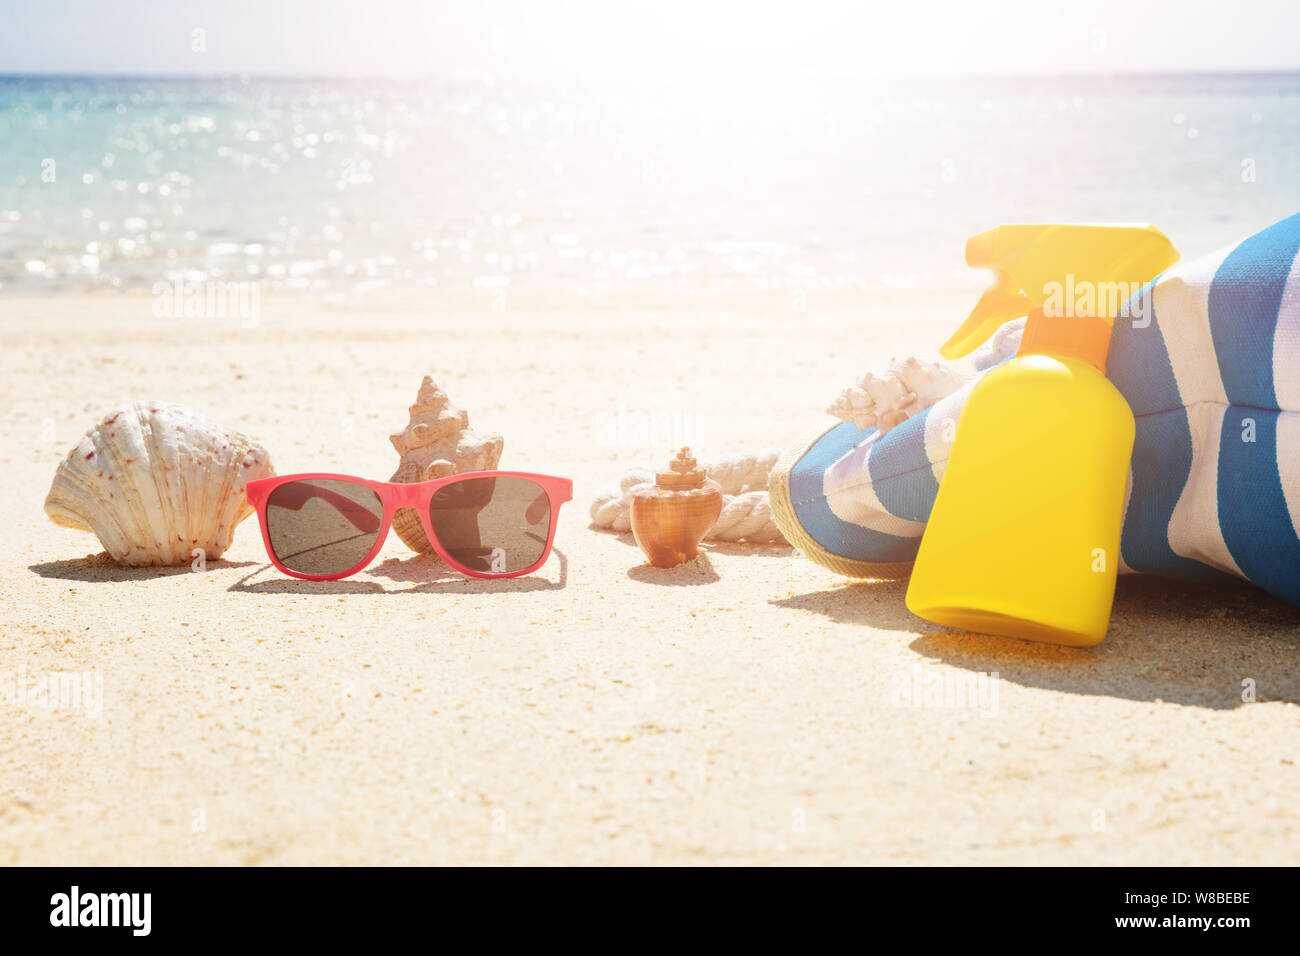 Lunettes de soleil en face de coquillage près de sac à main et jaune flacon pulvérisateur sur Sand At Beach Banque D'Images